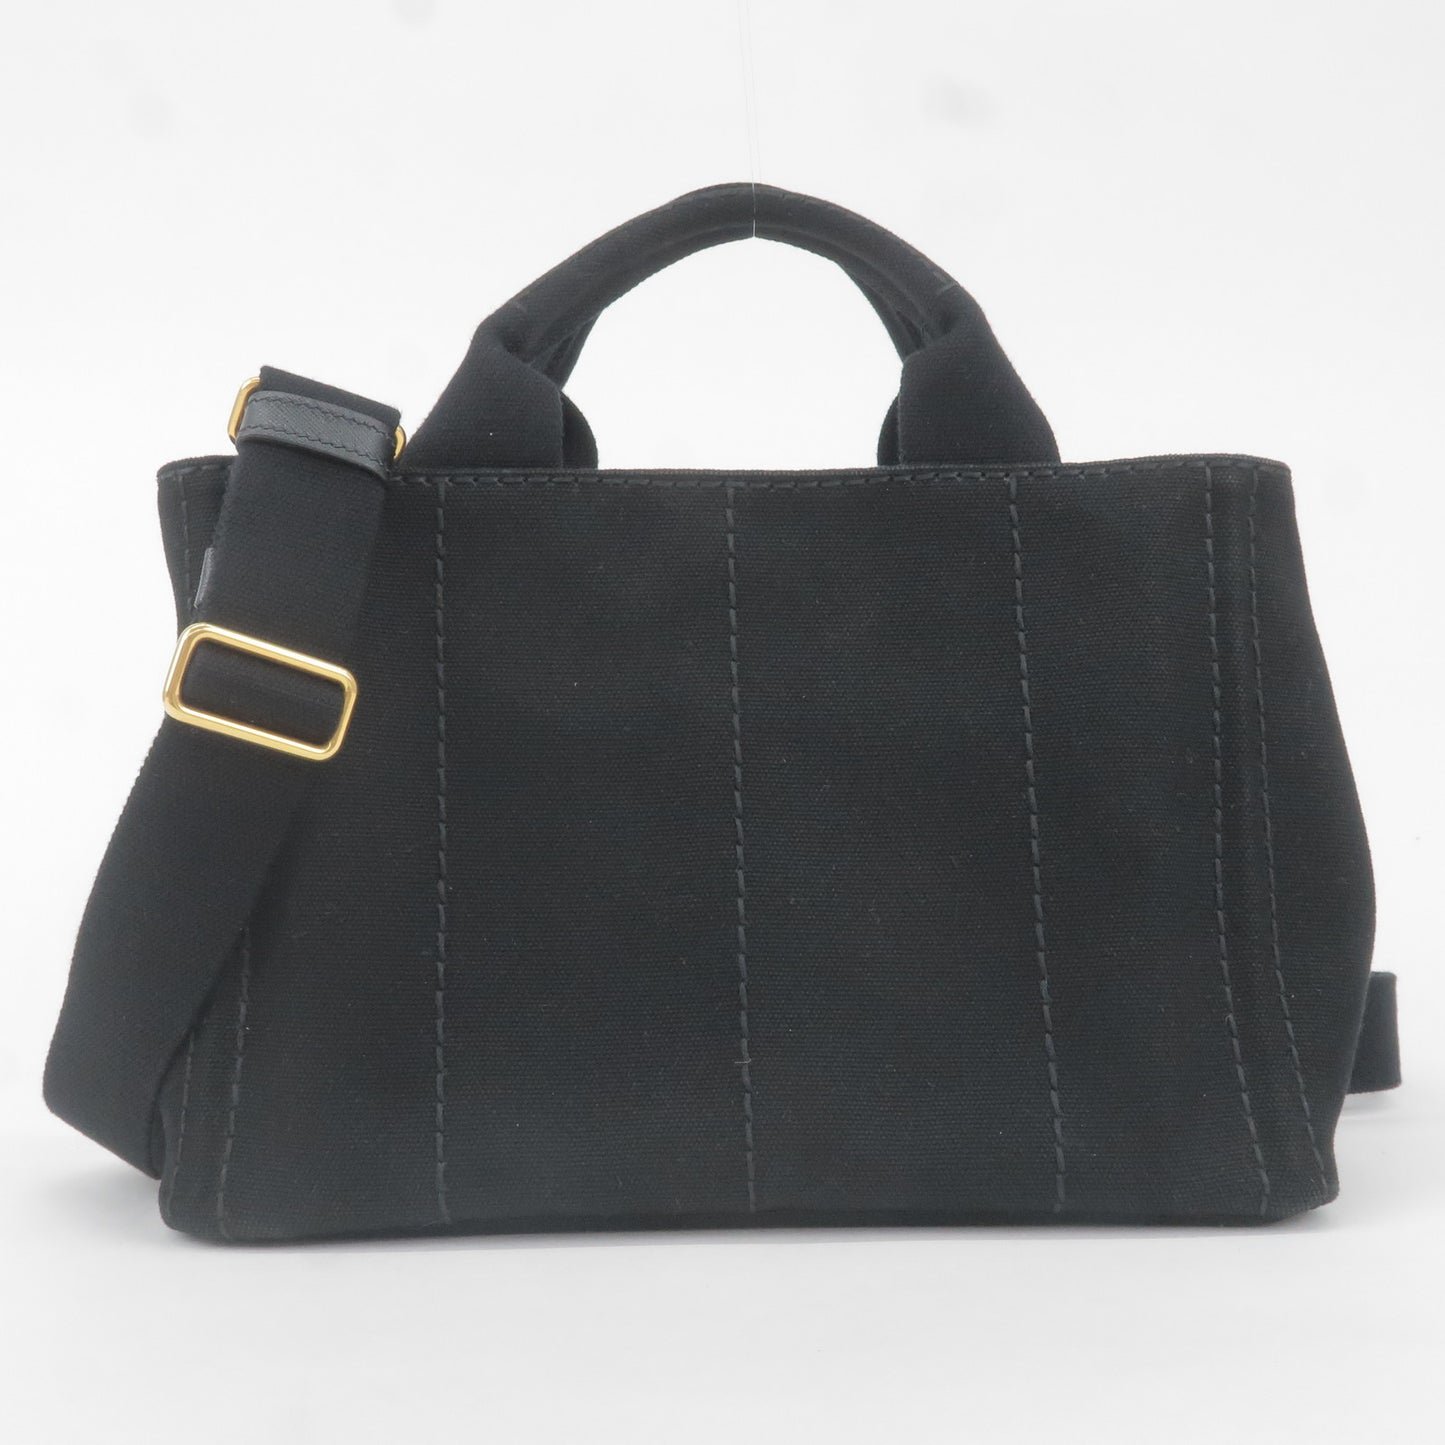 PRADA Canapa Mini Canvas 2Way Bag Shoulder Bag Black B2439G